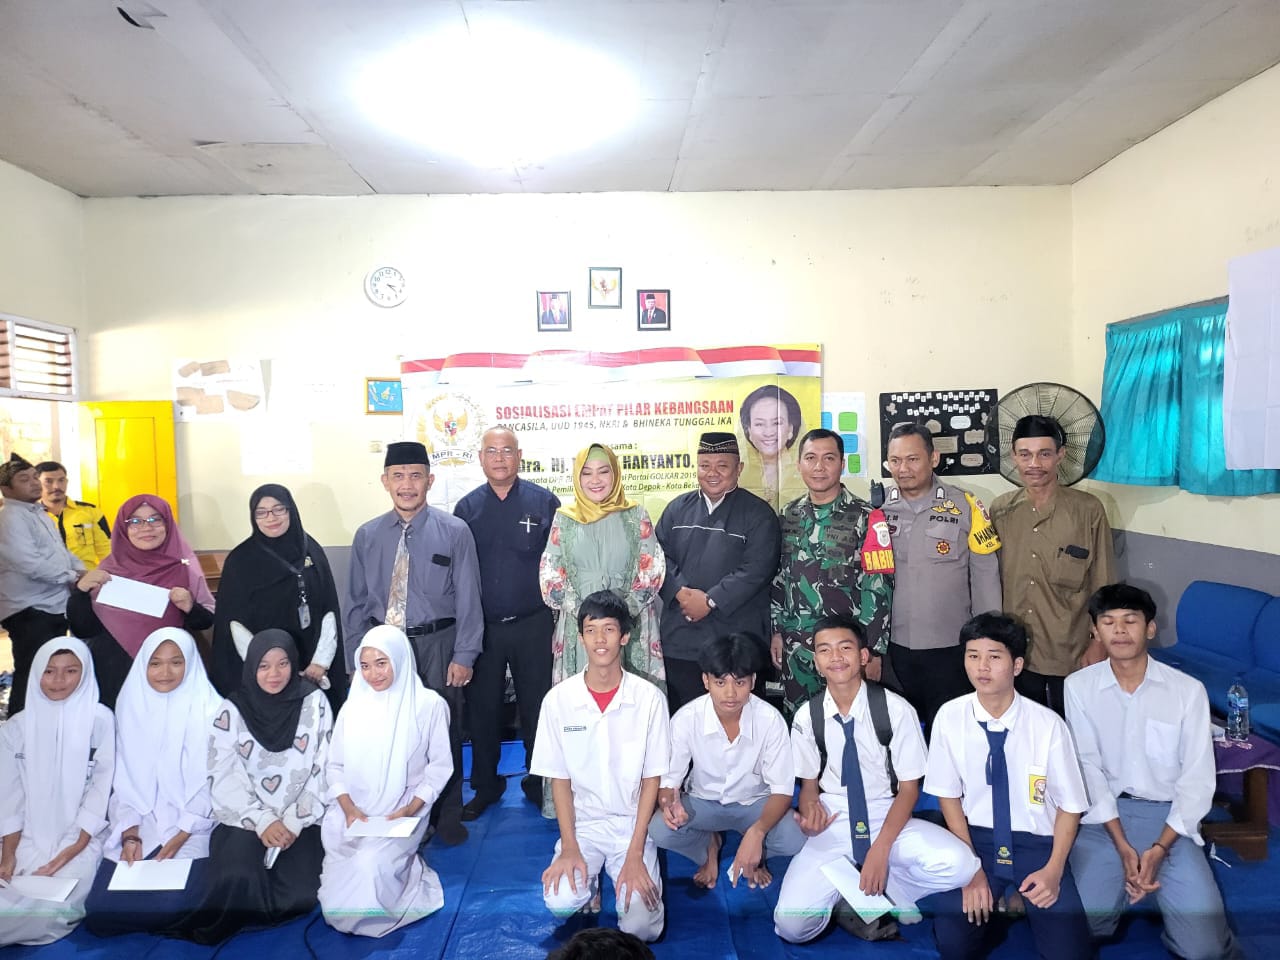 DPR RI Wenny Haryanto Mengajak Generasi Muda Khusus Gen Z Untuk Praktikkan Empat Pilar (detikindonesia.co.id)